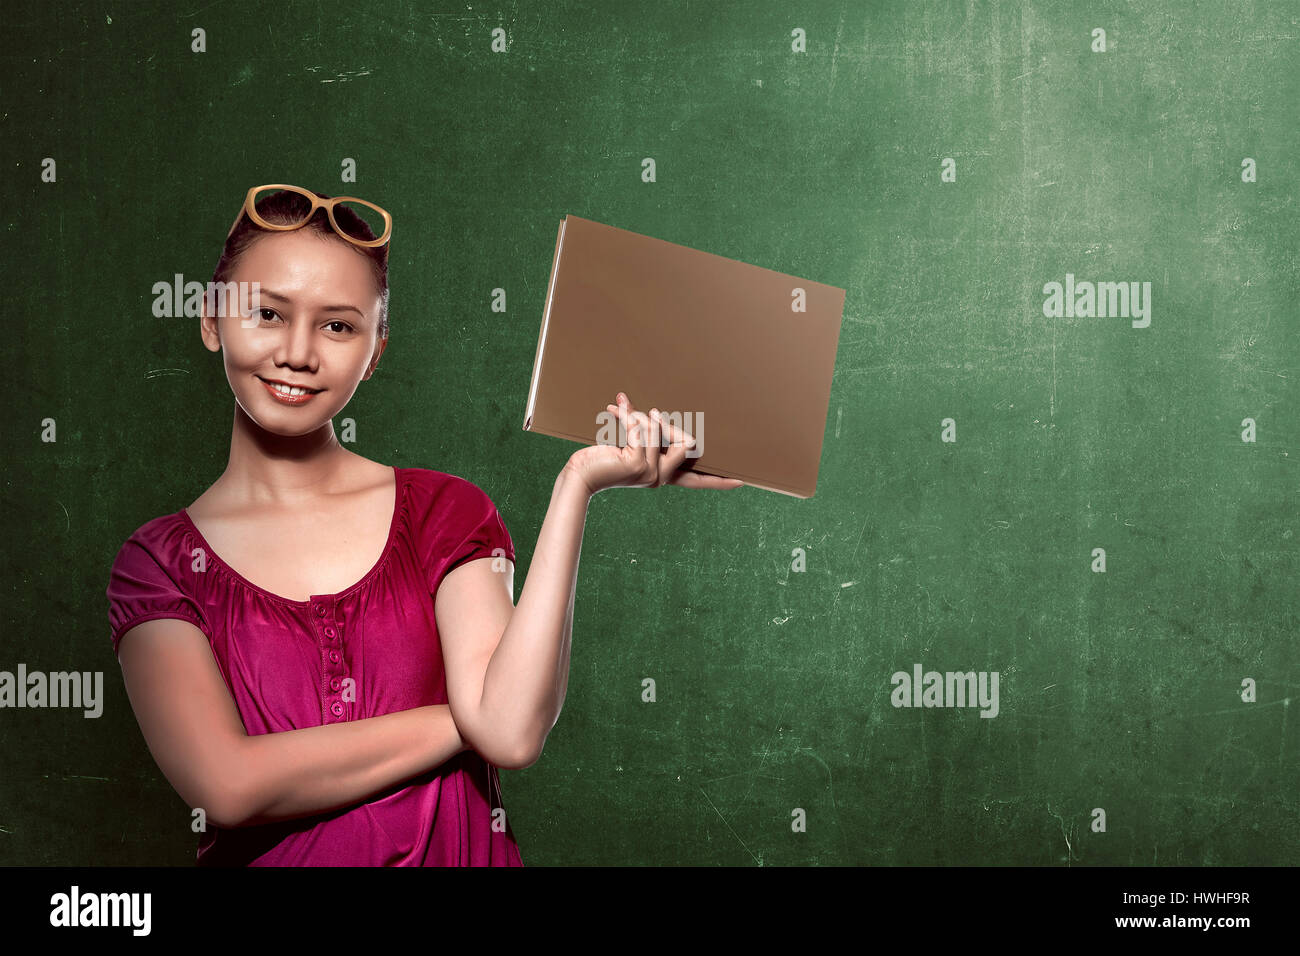 Asiatische Studentin Buch mit Tafel Hintergrund hält. Sie können Ihr Design auf dem Brett setzen. Stockfoto